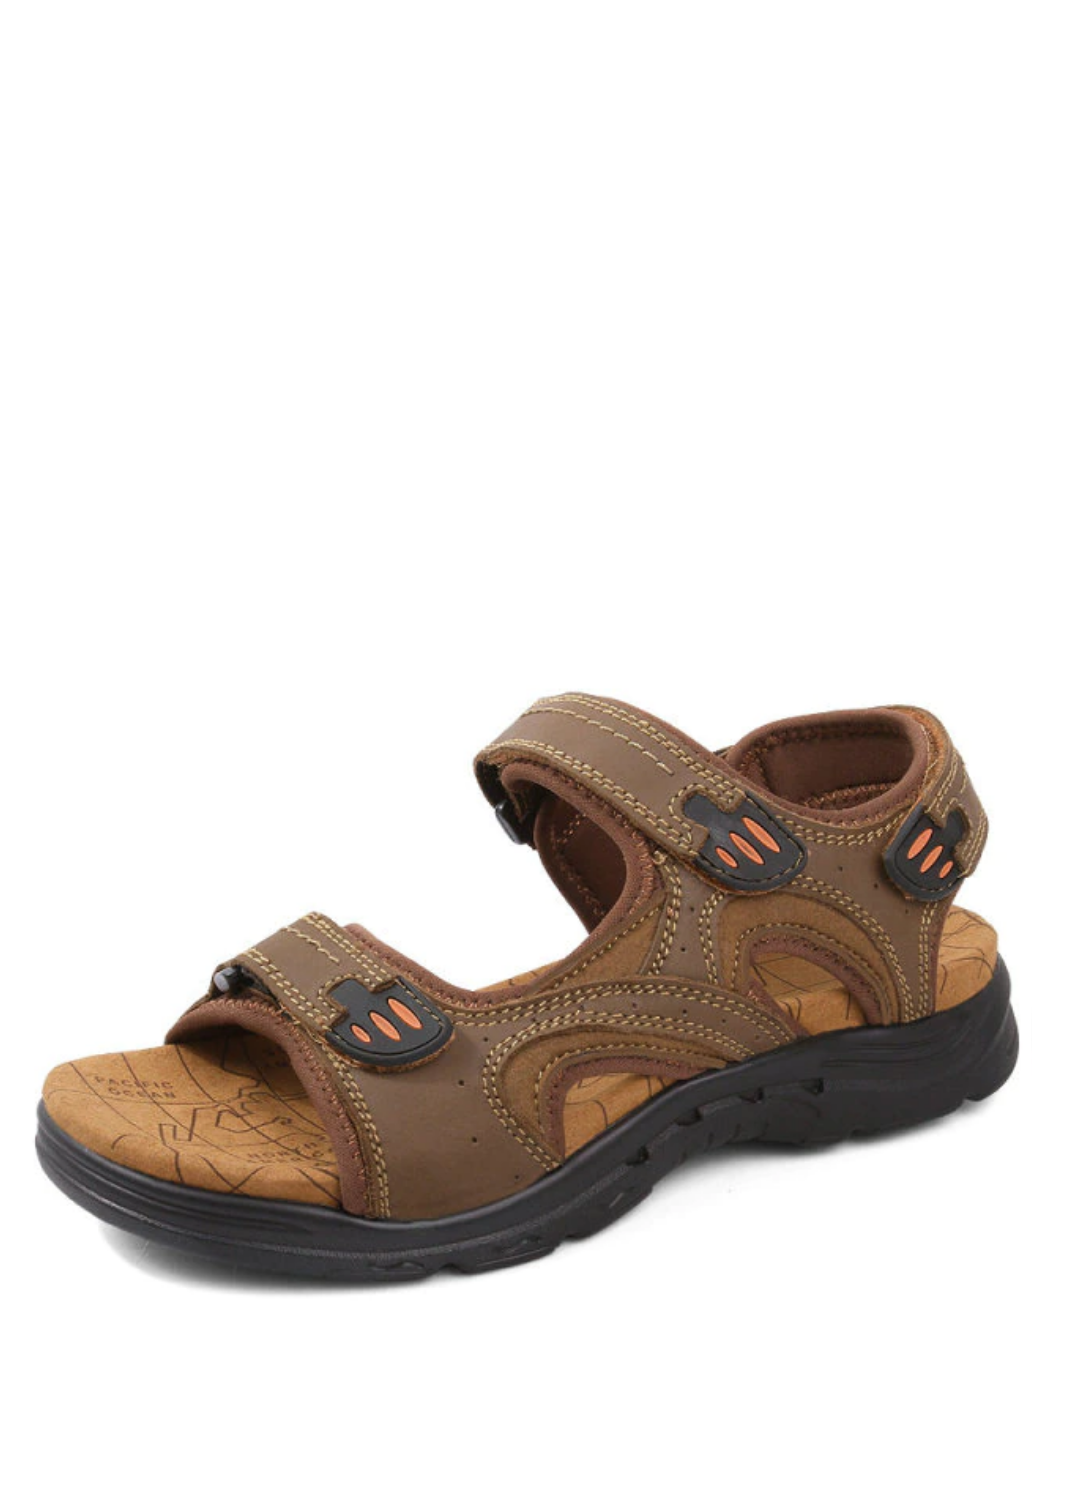 Kabe Men's Outdoor Sandals | Ultrasellershoes.com – Ultra Seller Shoes